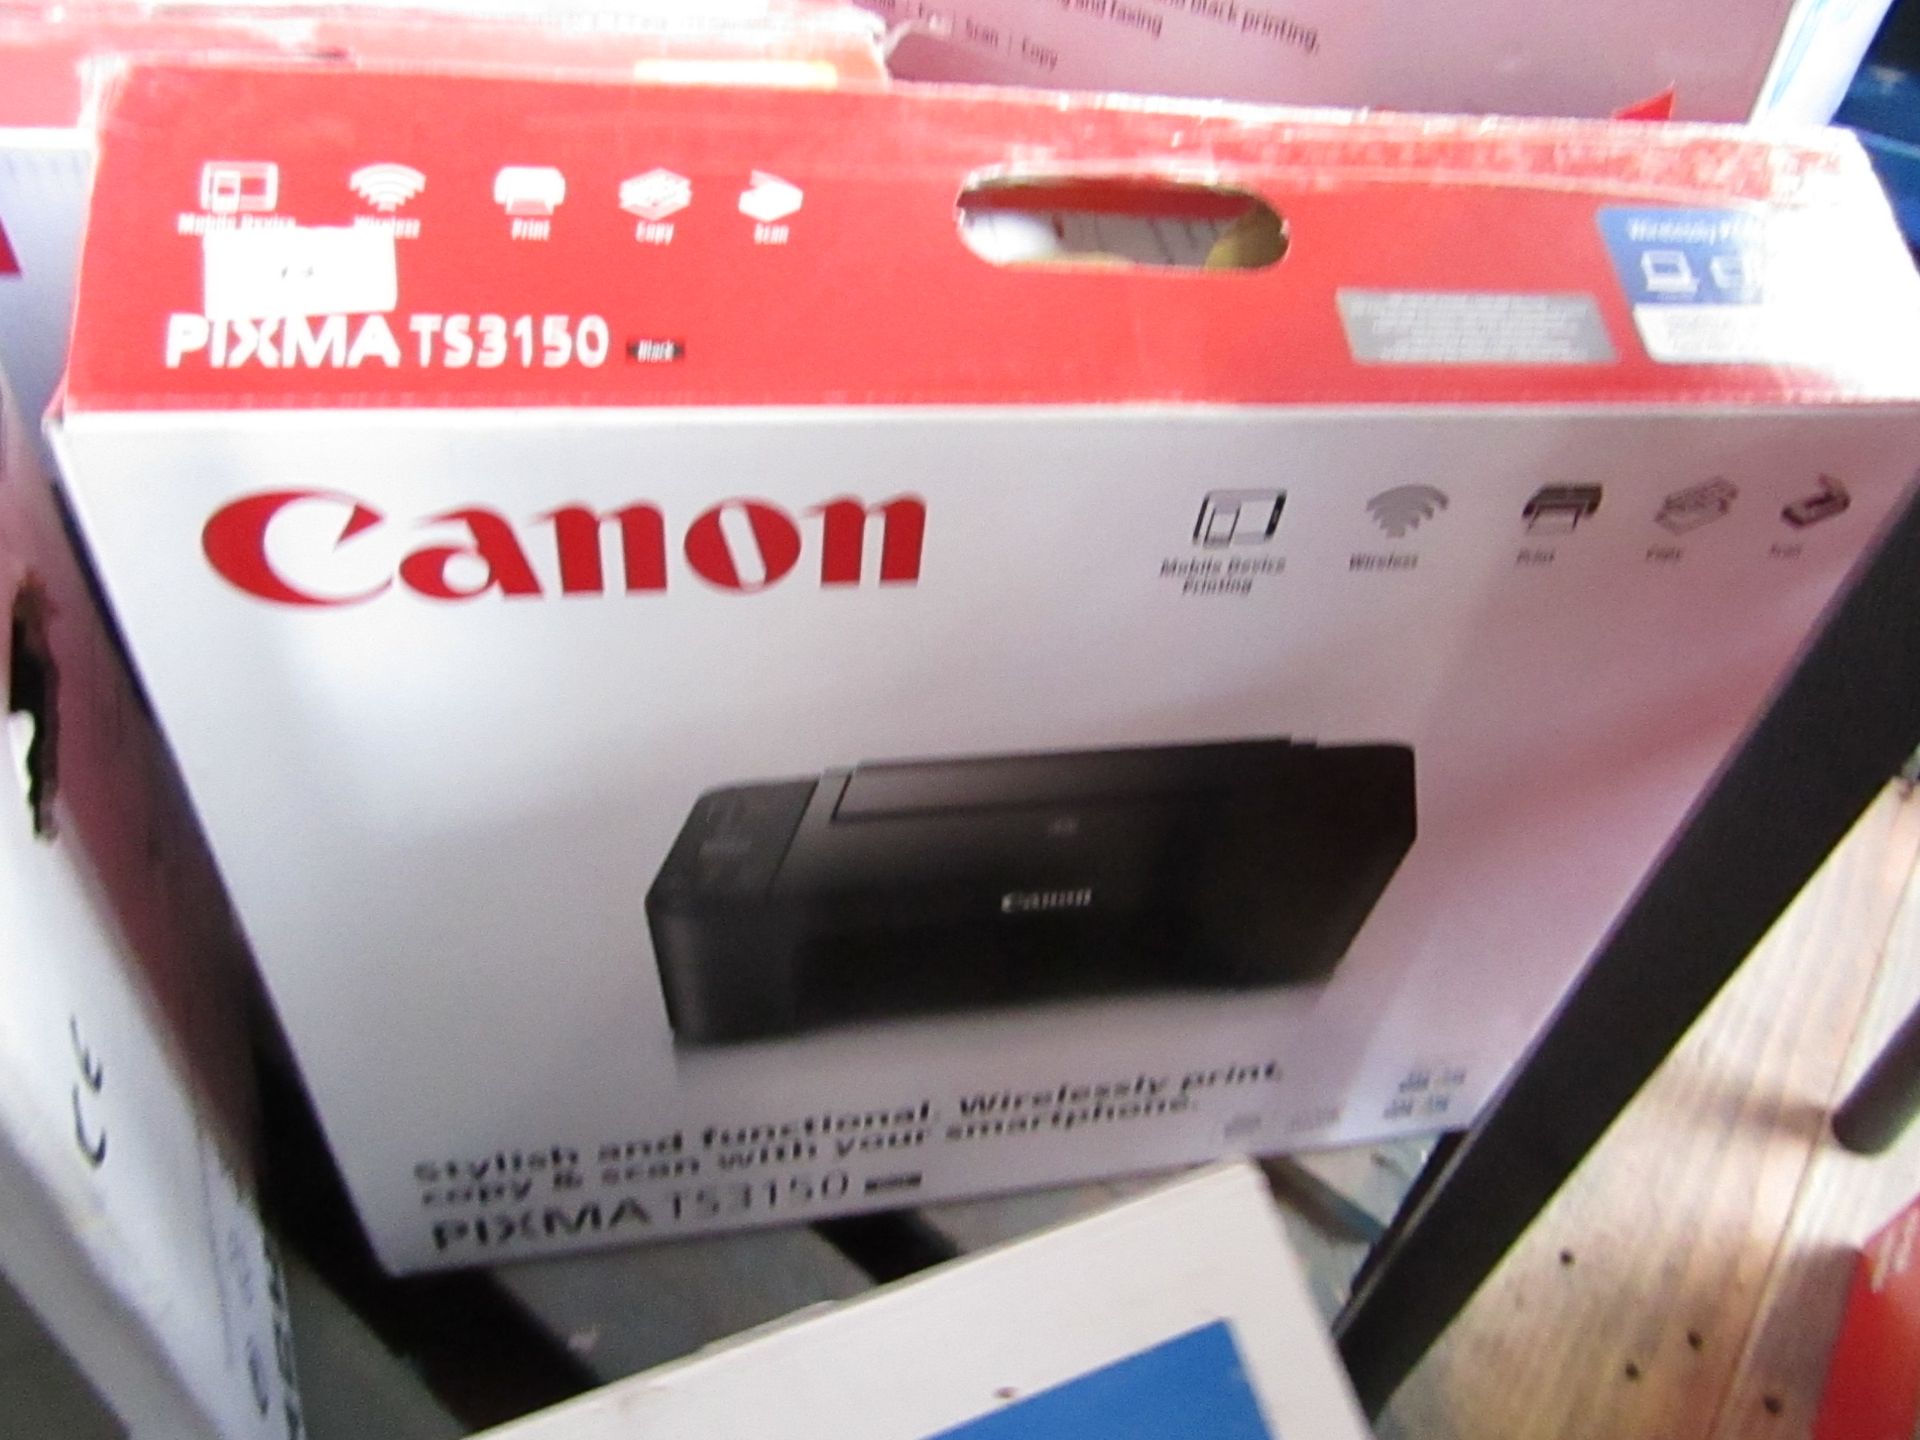 Canon Pixma TS3150 printer, untested and boxed.